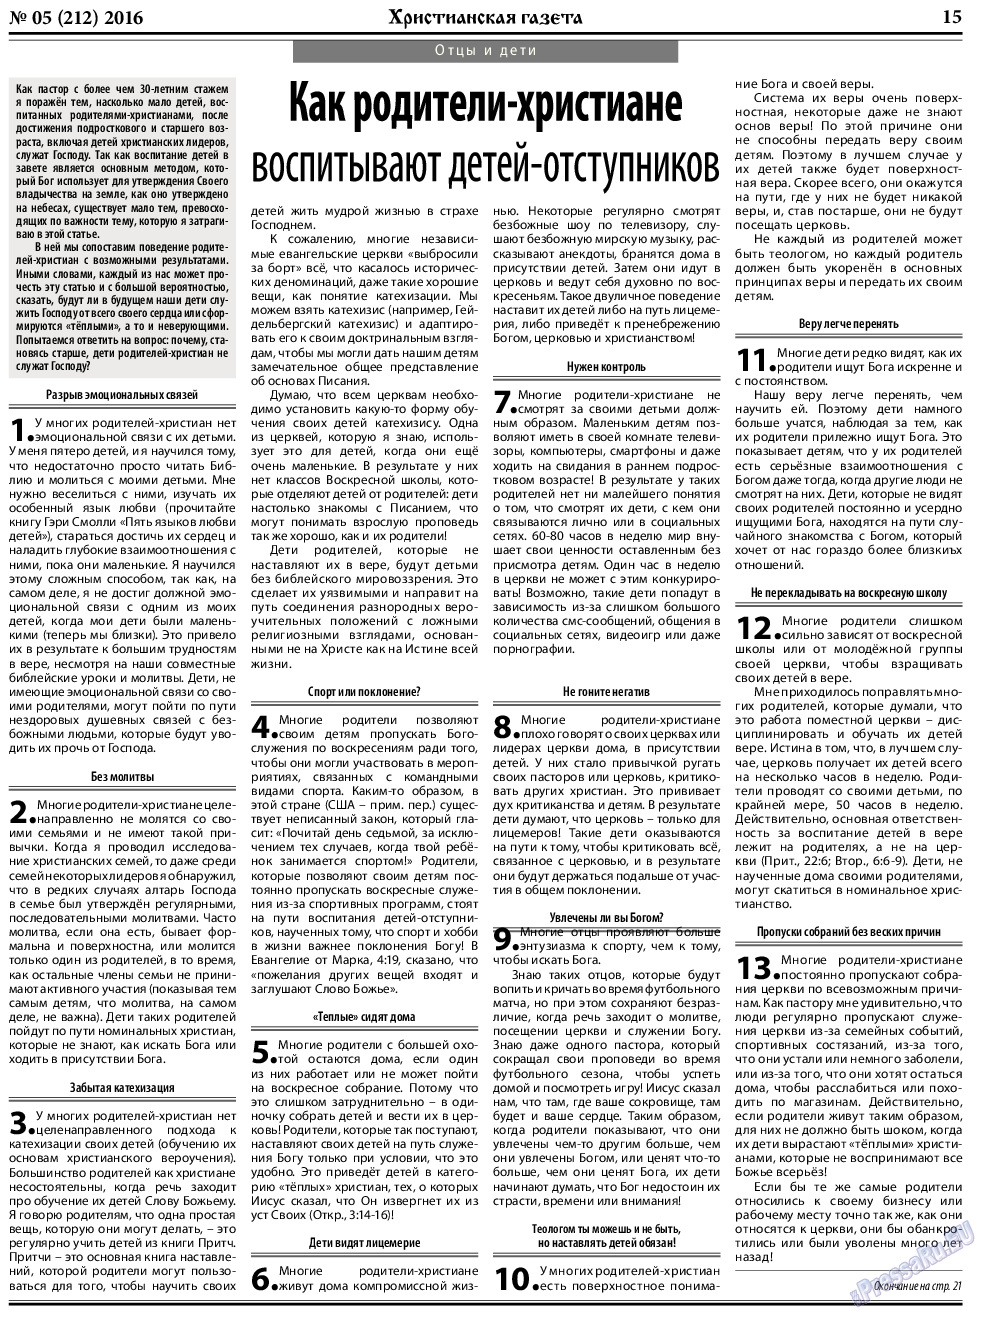 Христианская газета, газета. 2016 №5 стр.23